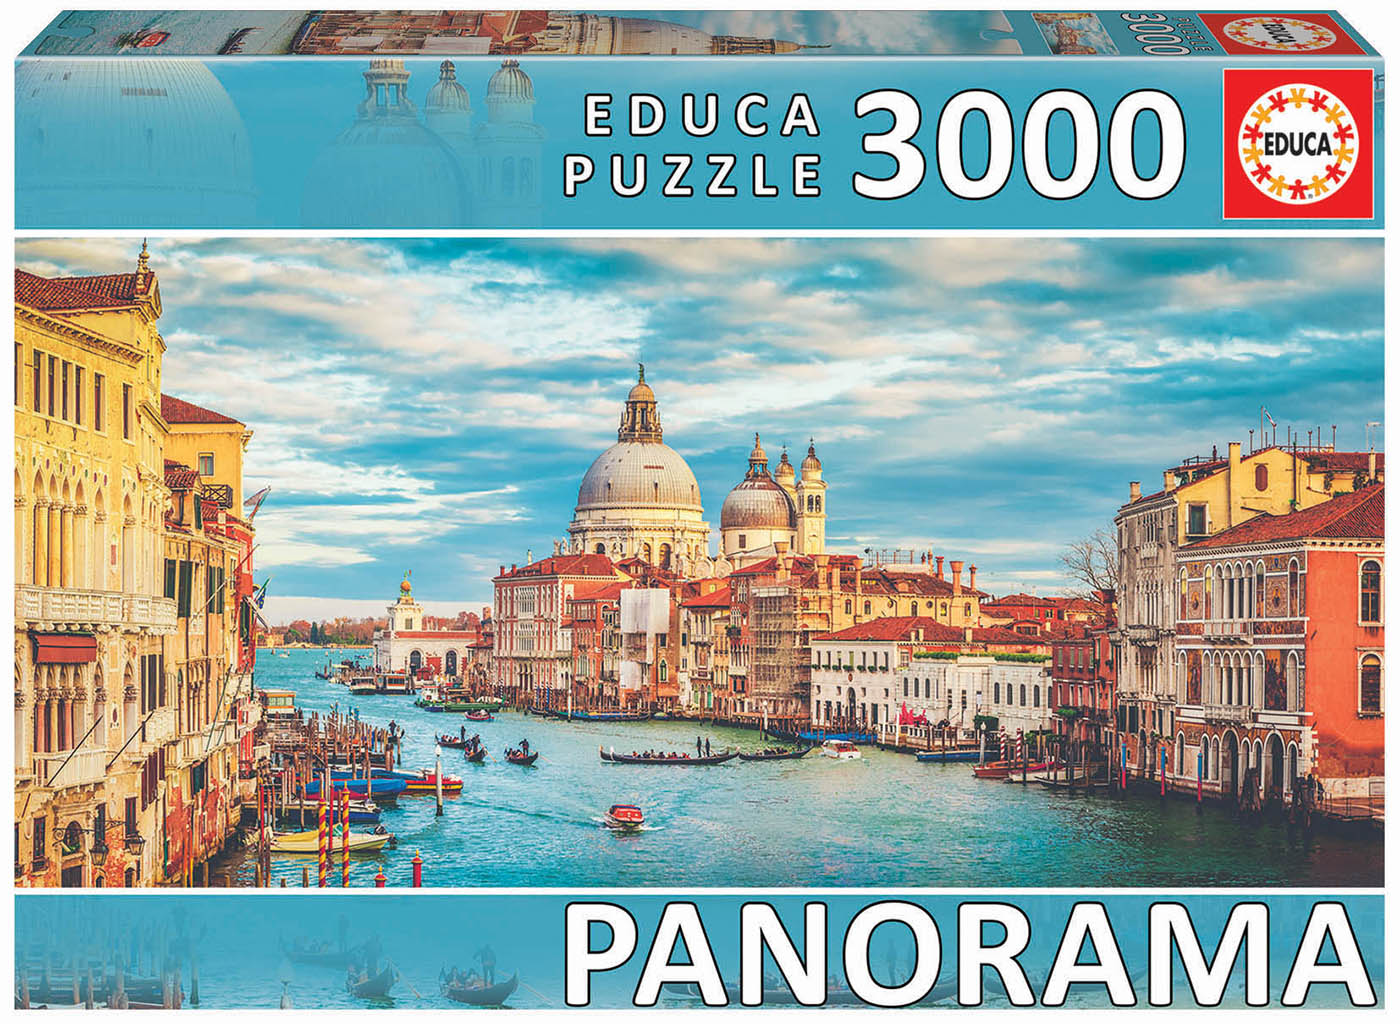 Comprar Guarda Puzzles Grafika de 300 a 3000 Piezas Pequeñas - 80003